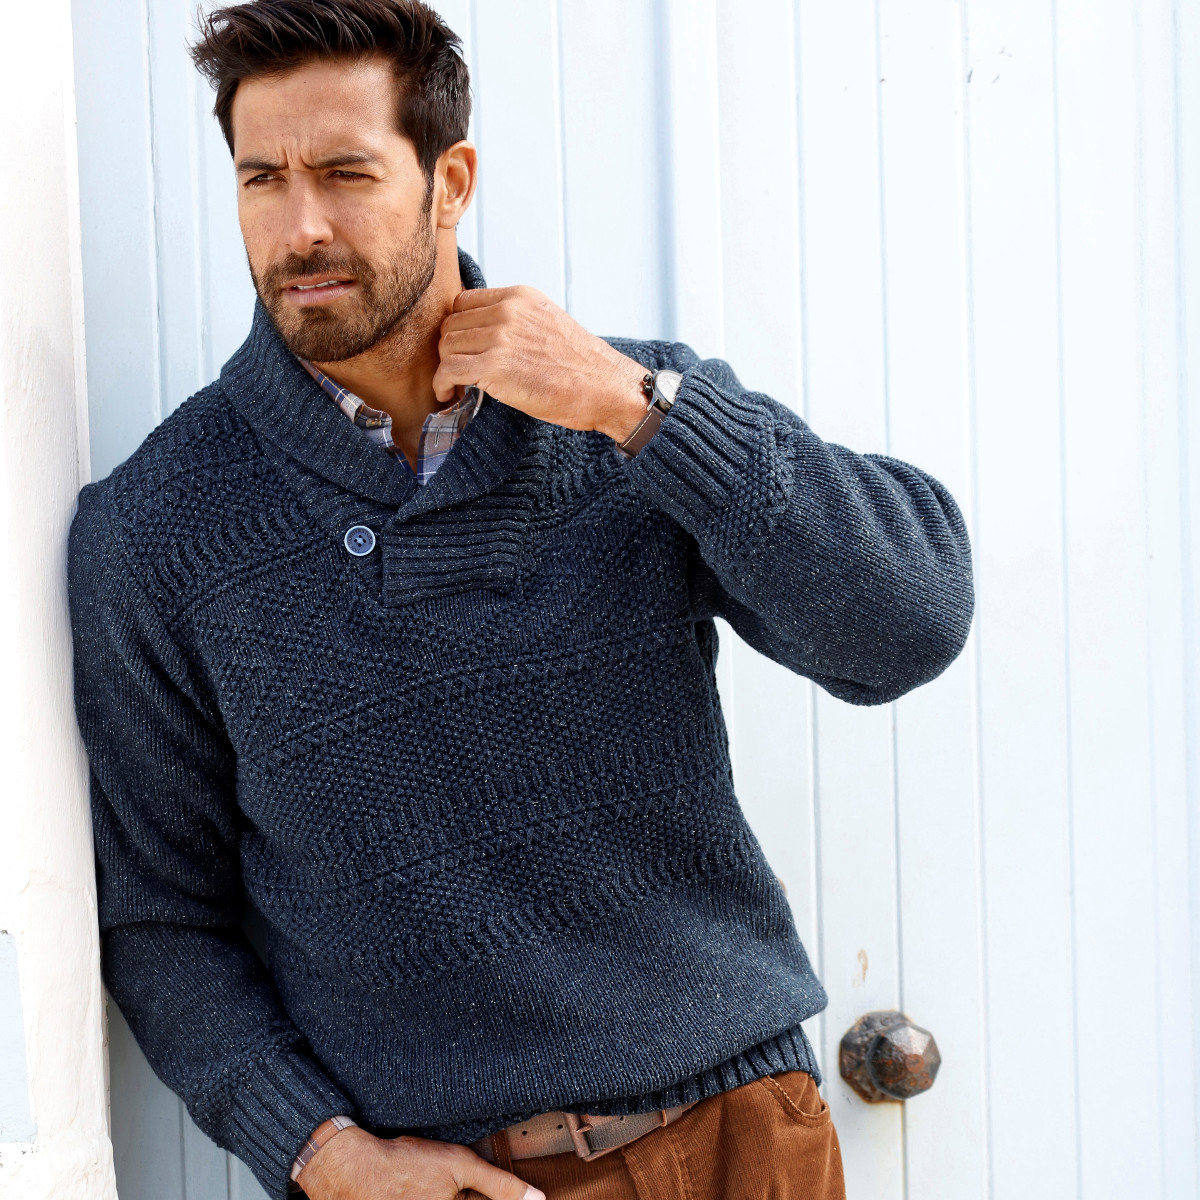 Pullover Strick Männer Mode Große Größen Plus Size Fashion Schalkragen mit Knopf